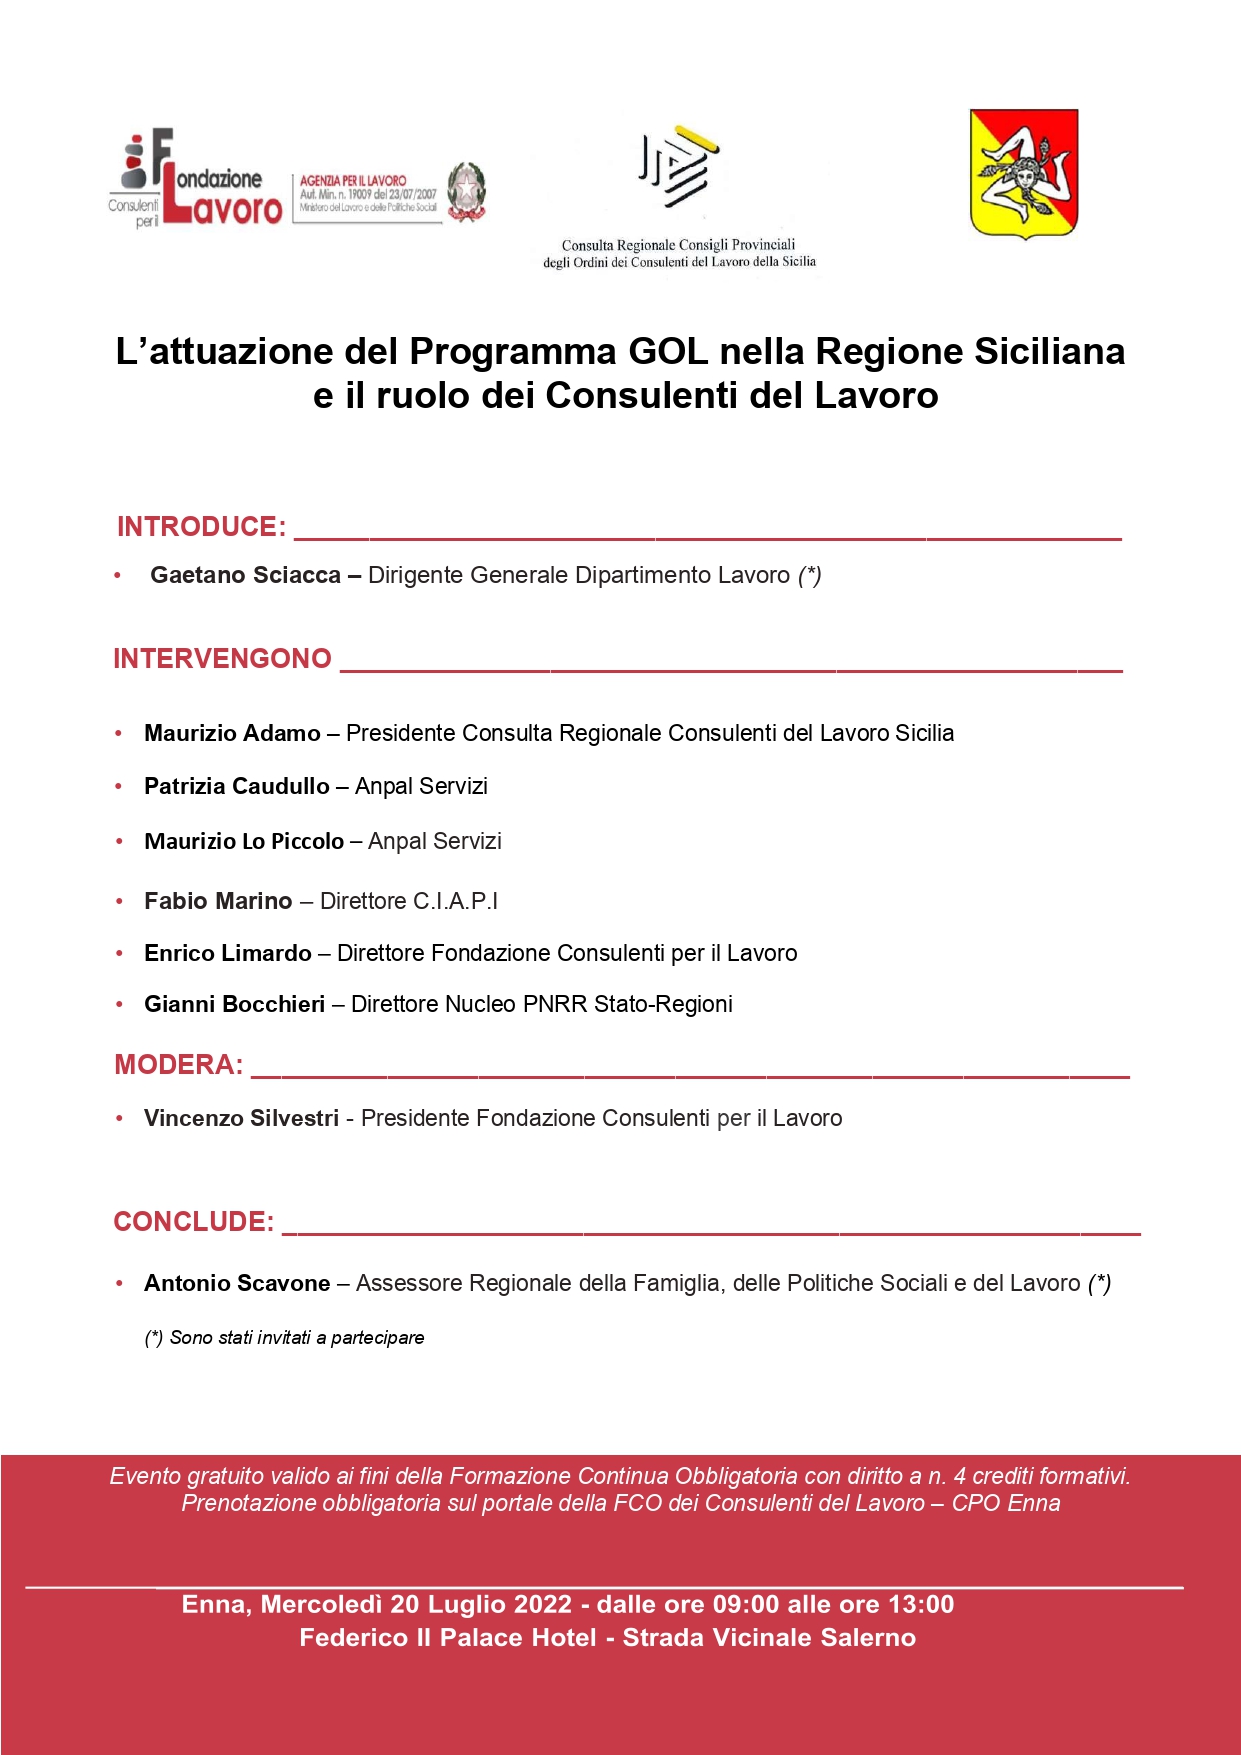 Convegno: L’attuazione del Programma GOL nella Regione Siciliana e il ruolo dei Consulenti del Lavoro - Enna 20 luglio 2022 ore 9:00-13:00